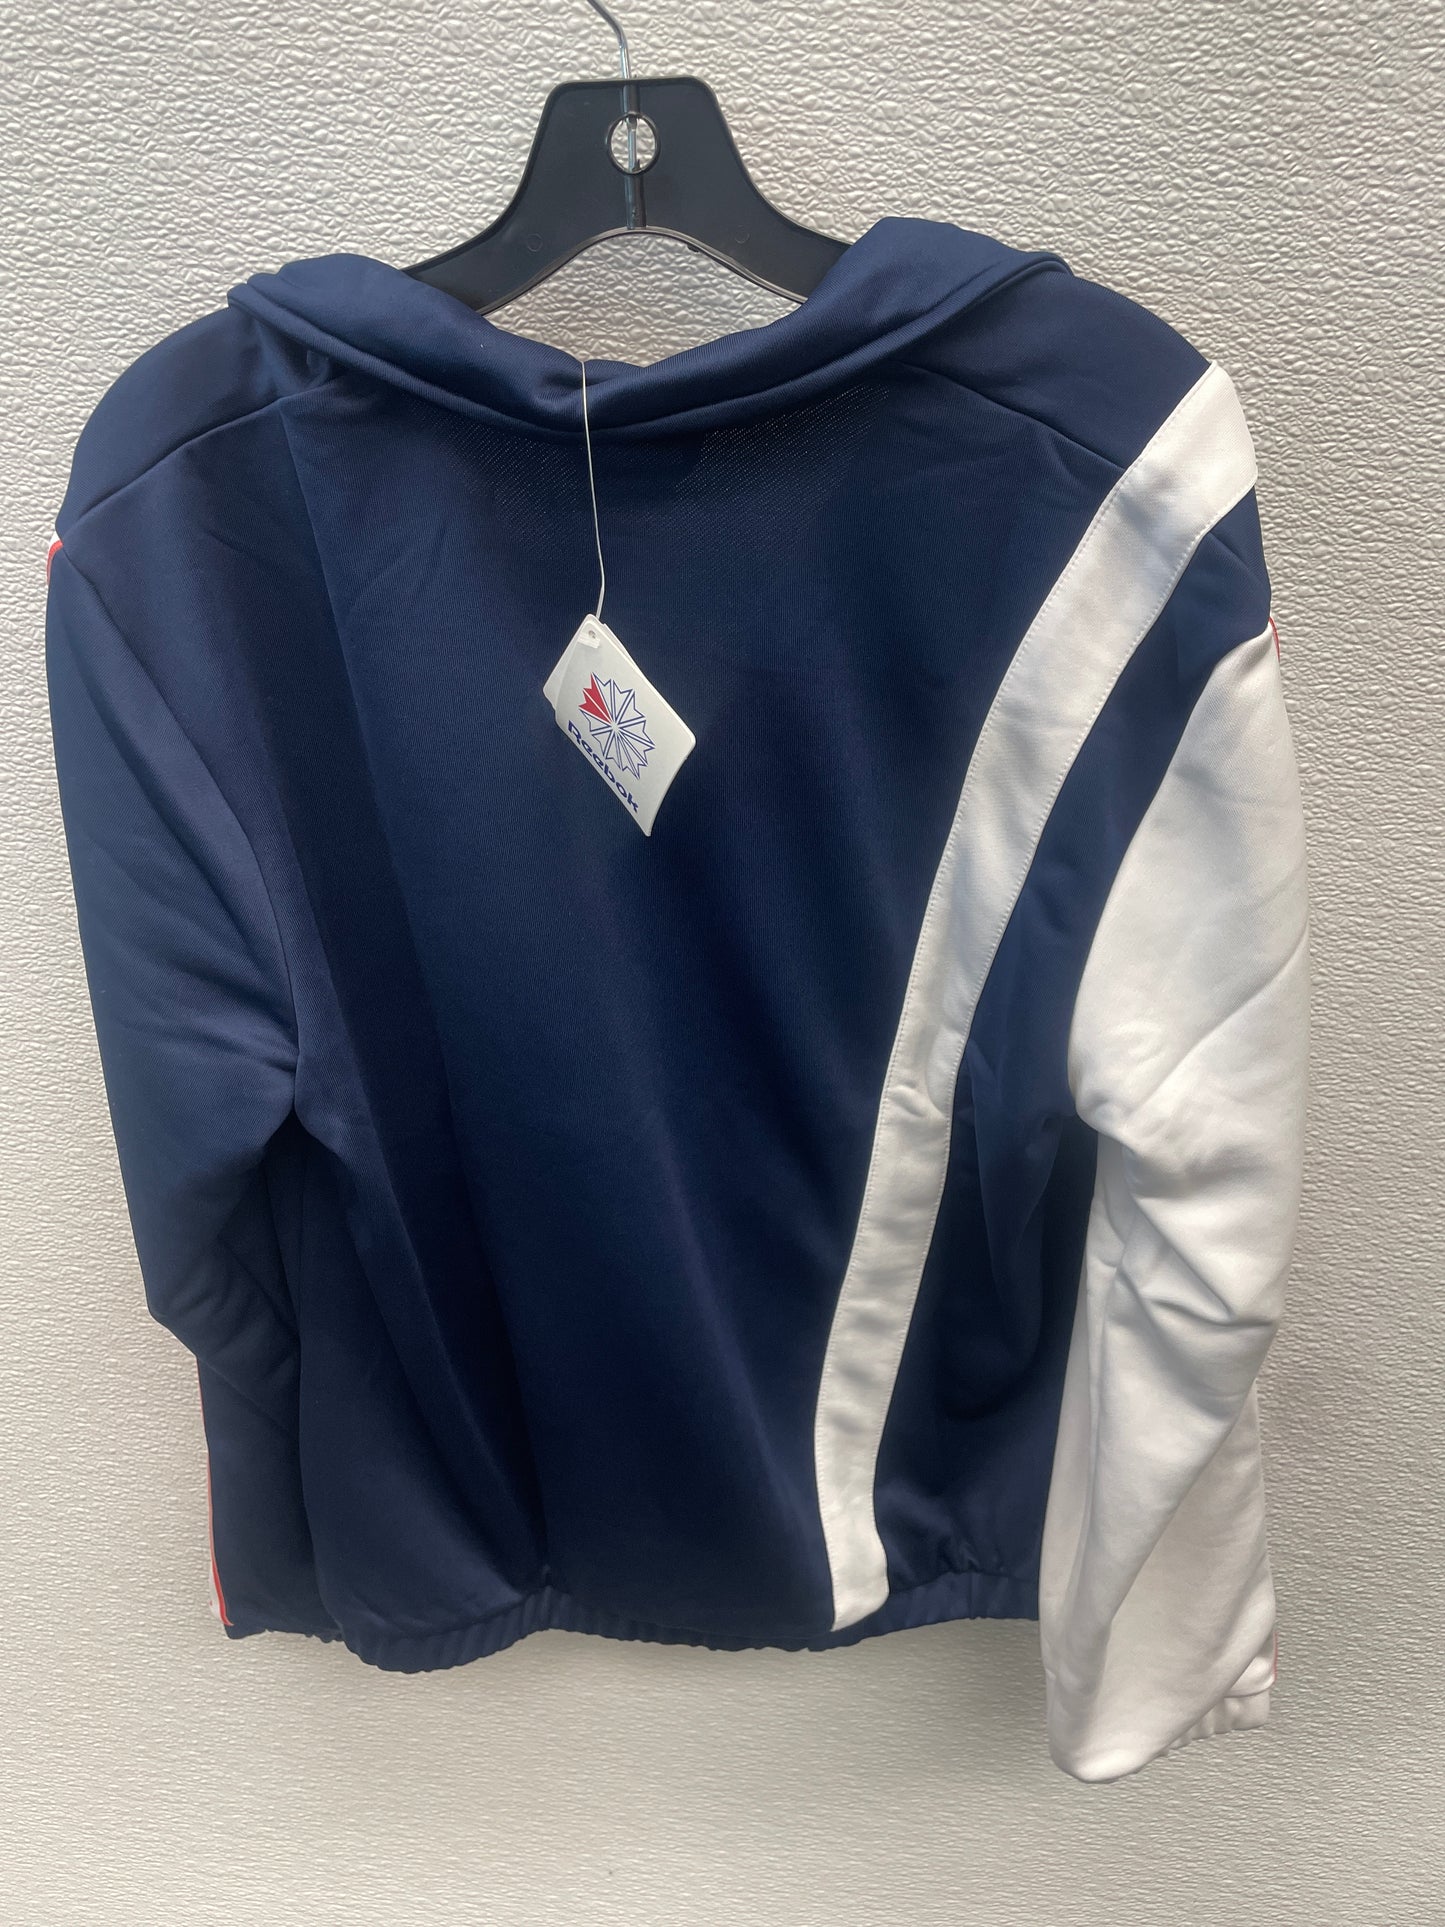 Athletic Jacket By Reebok  Size: L